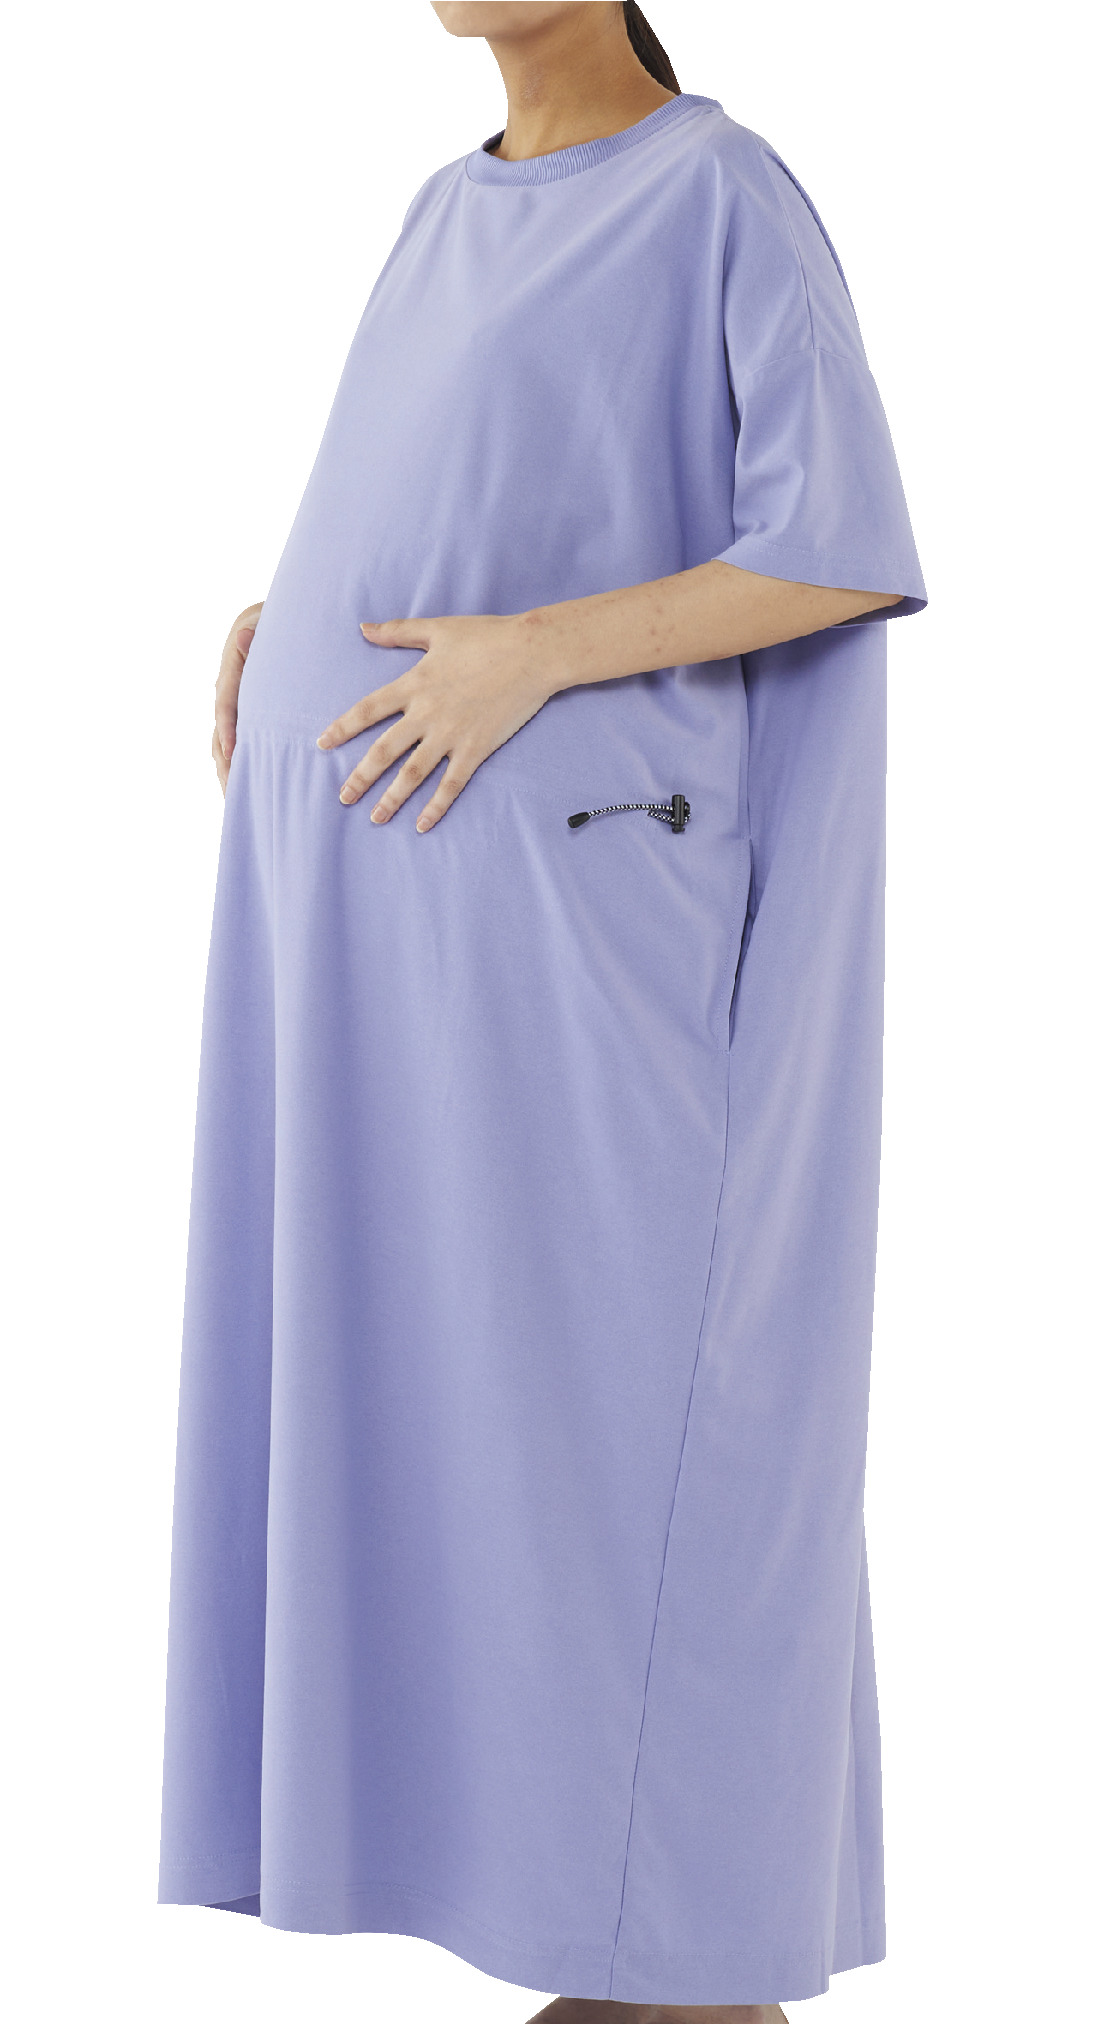 ニュートラルギャザーワンピース、パープルを着用した妊婦の画像